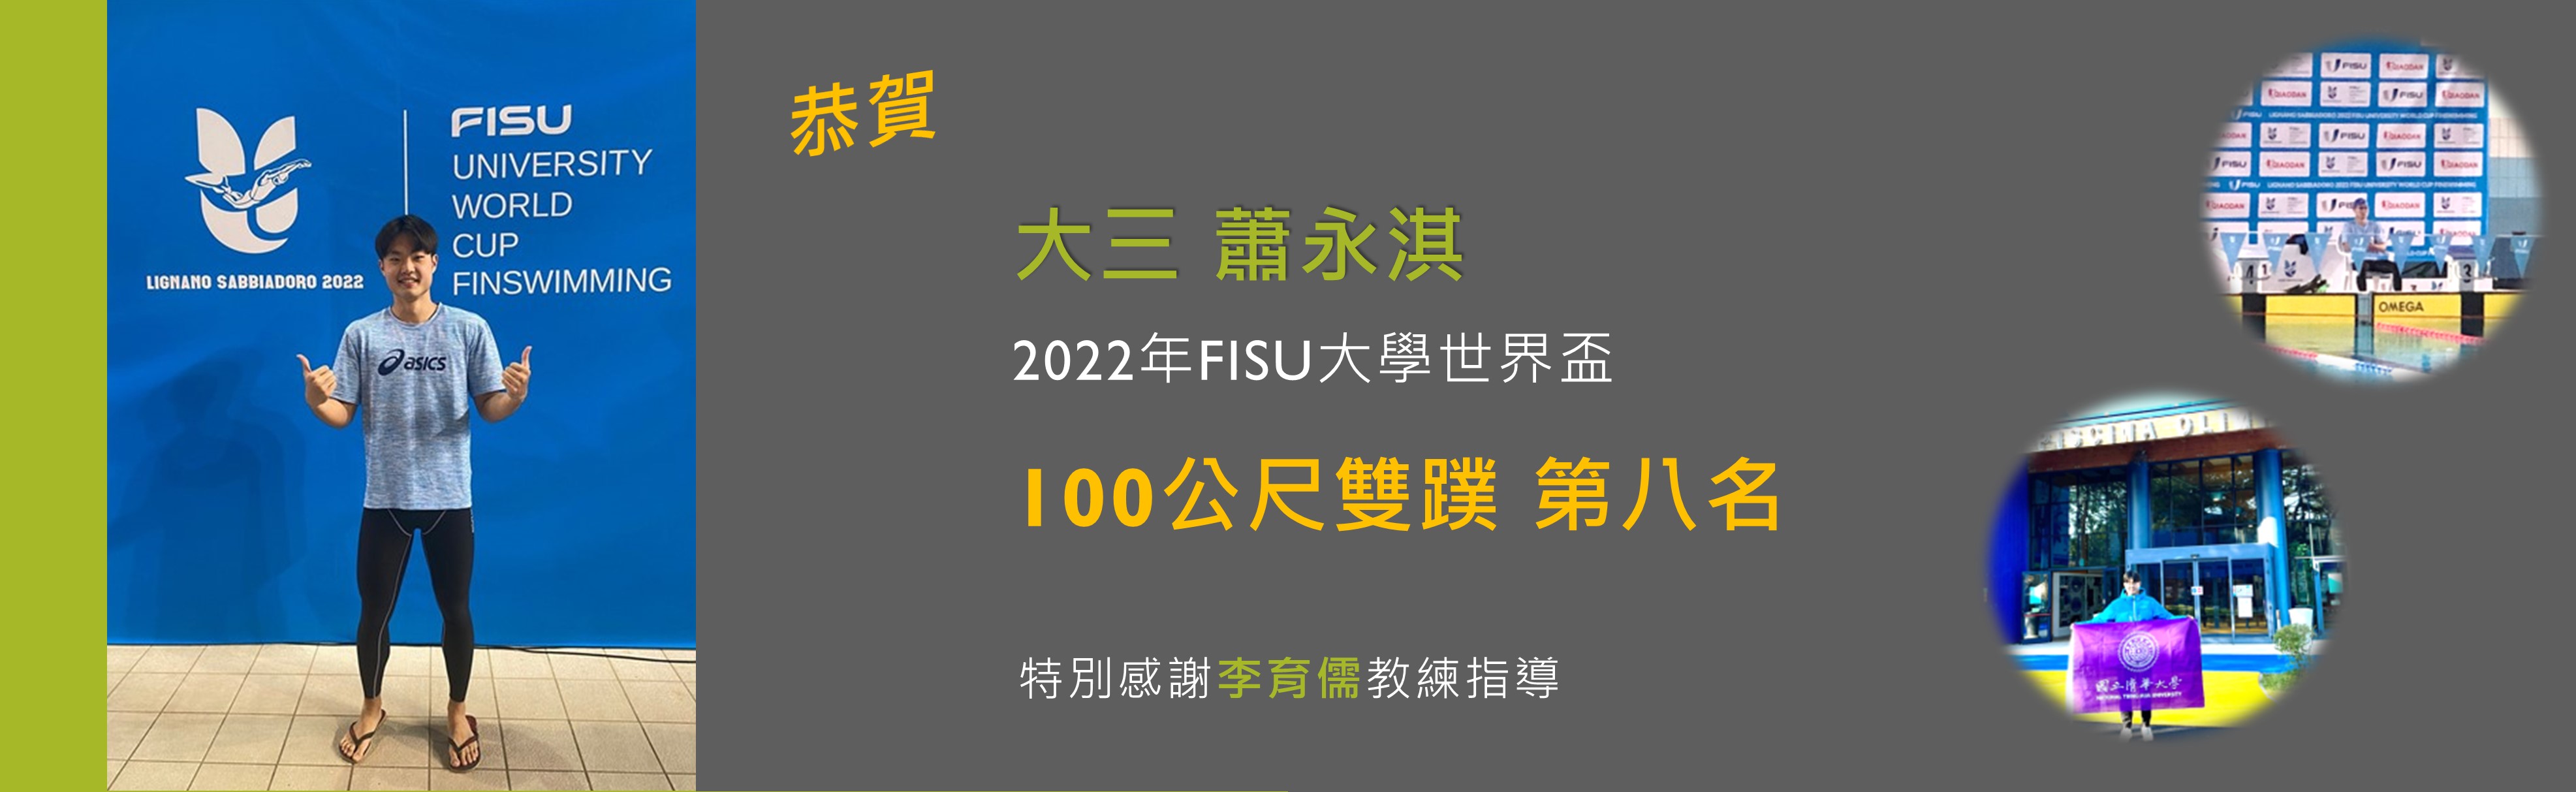 蕭永淇2022年FISU大學世界盃